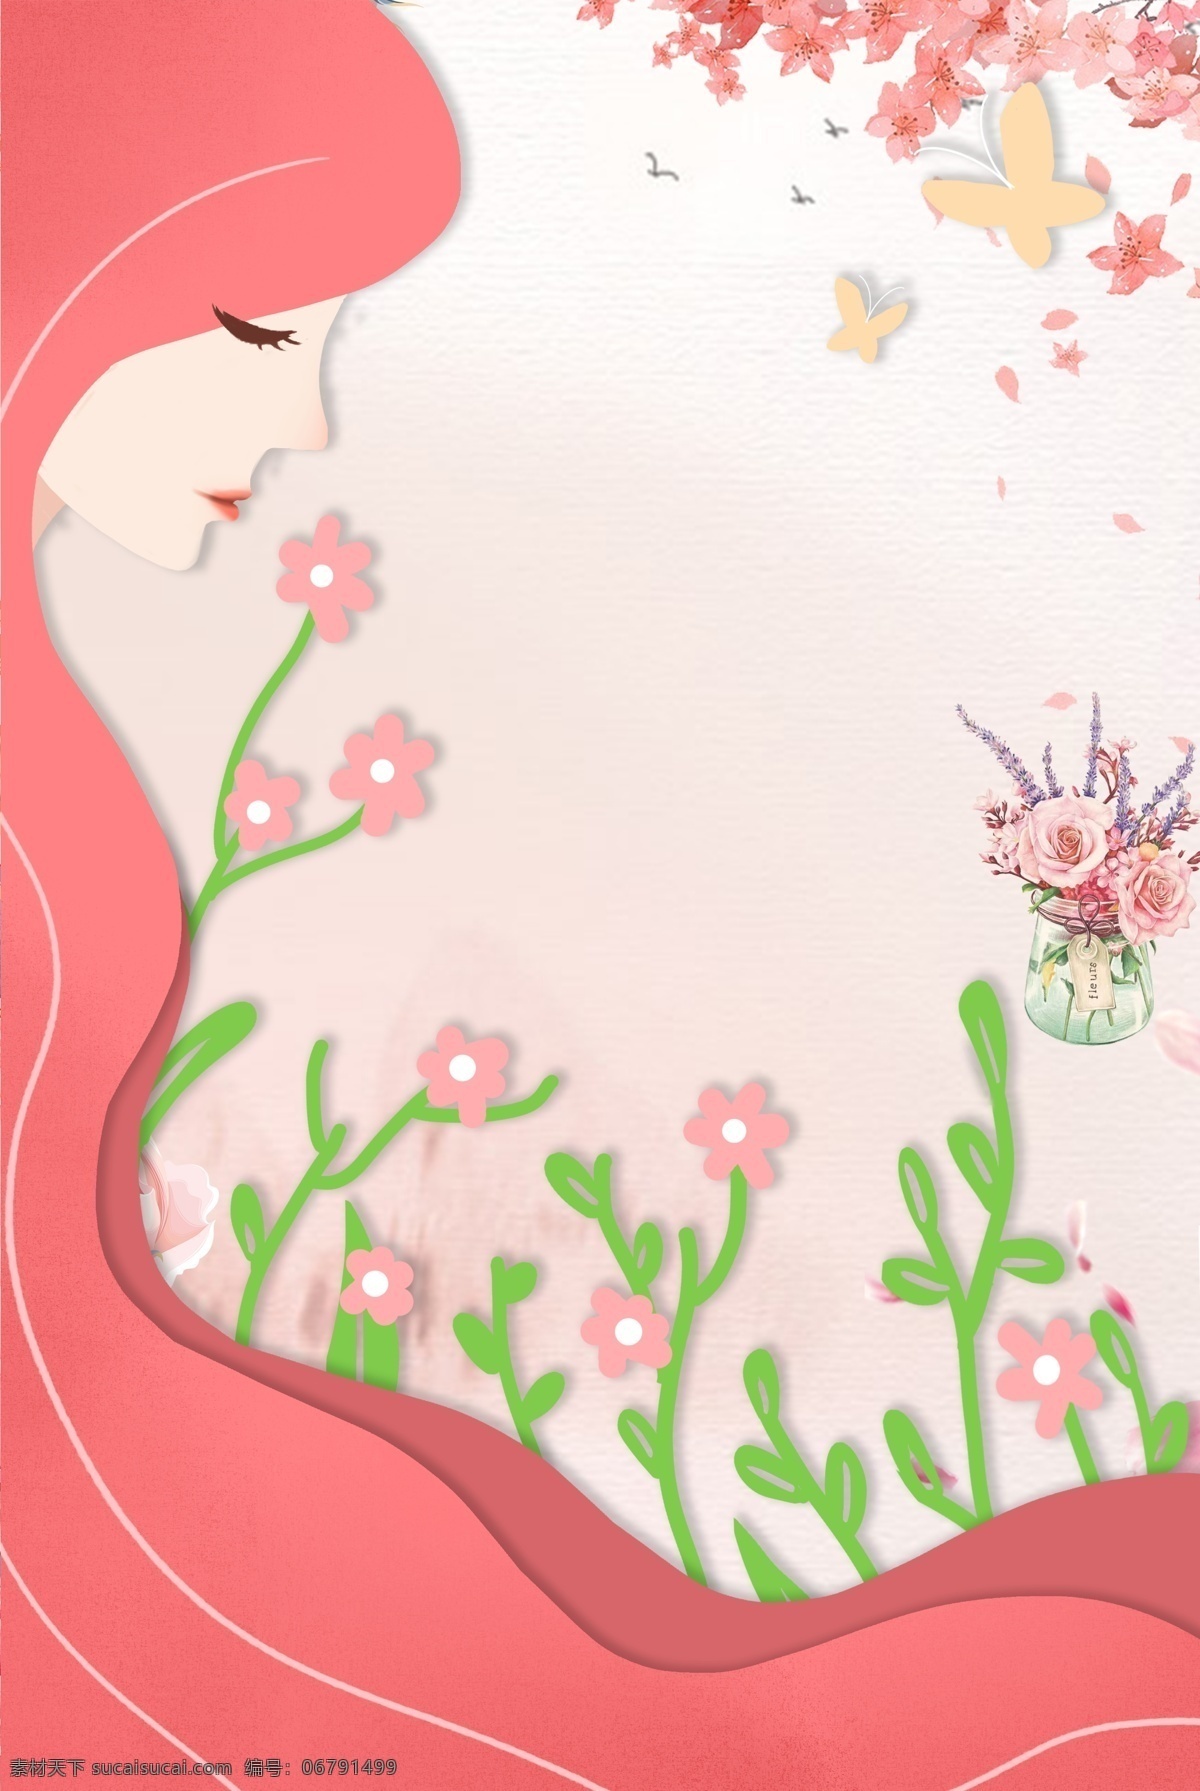 粉色 温馨 剪纸 母亲节 海报 背景 花卉 文艺 清新 卡通 手绘 质感 纹理